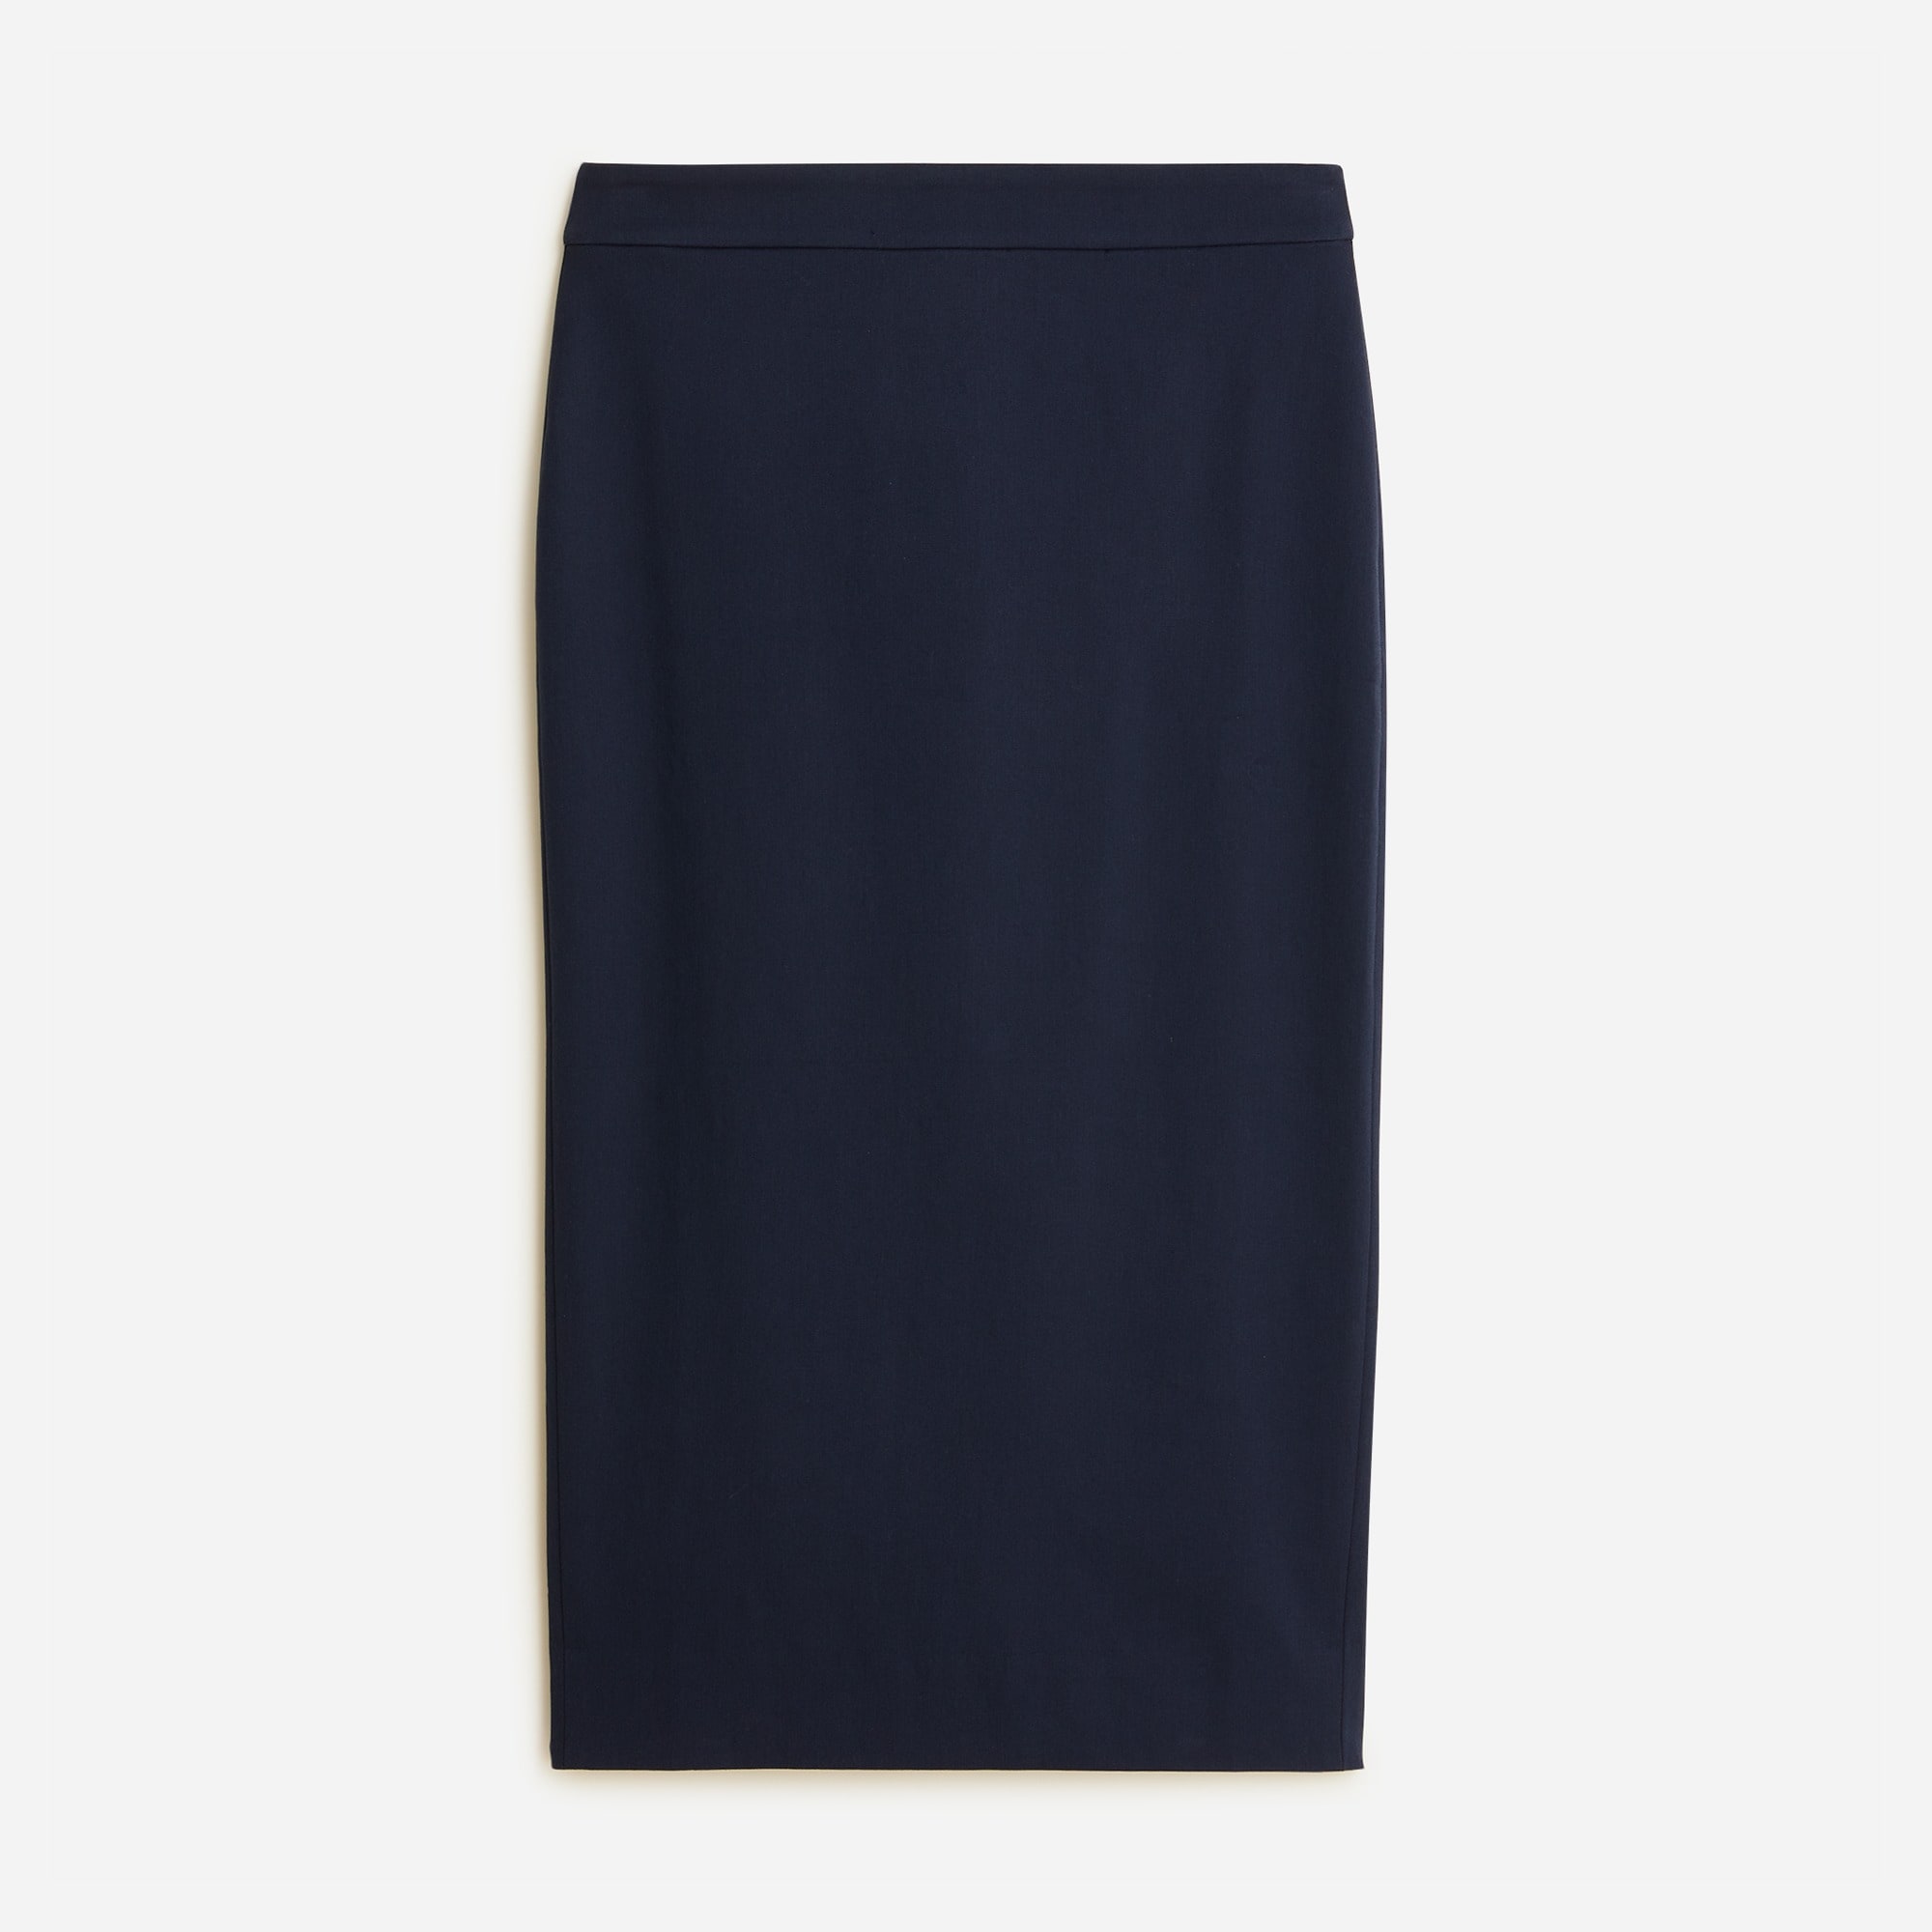  No. 3 Pencil skirt in bi-stretch cotton blend